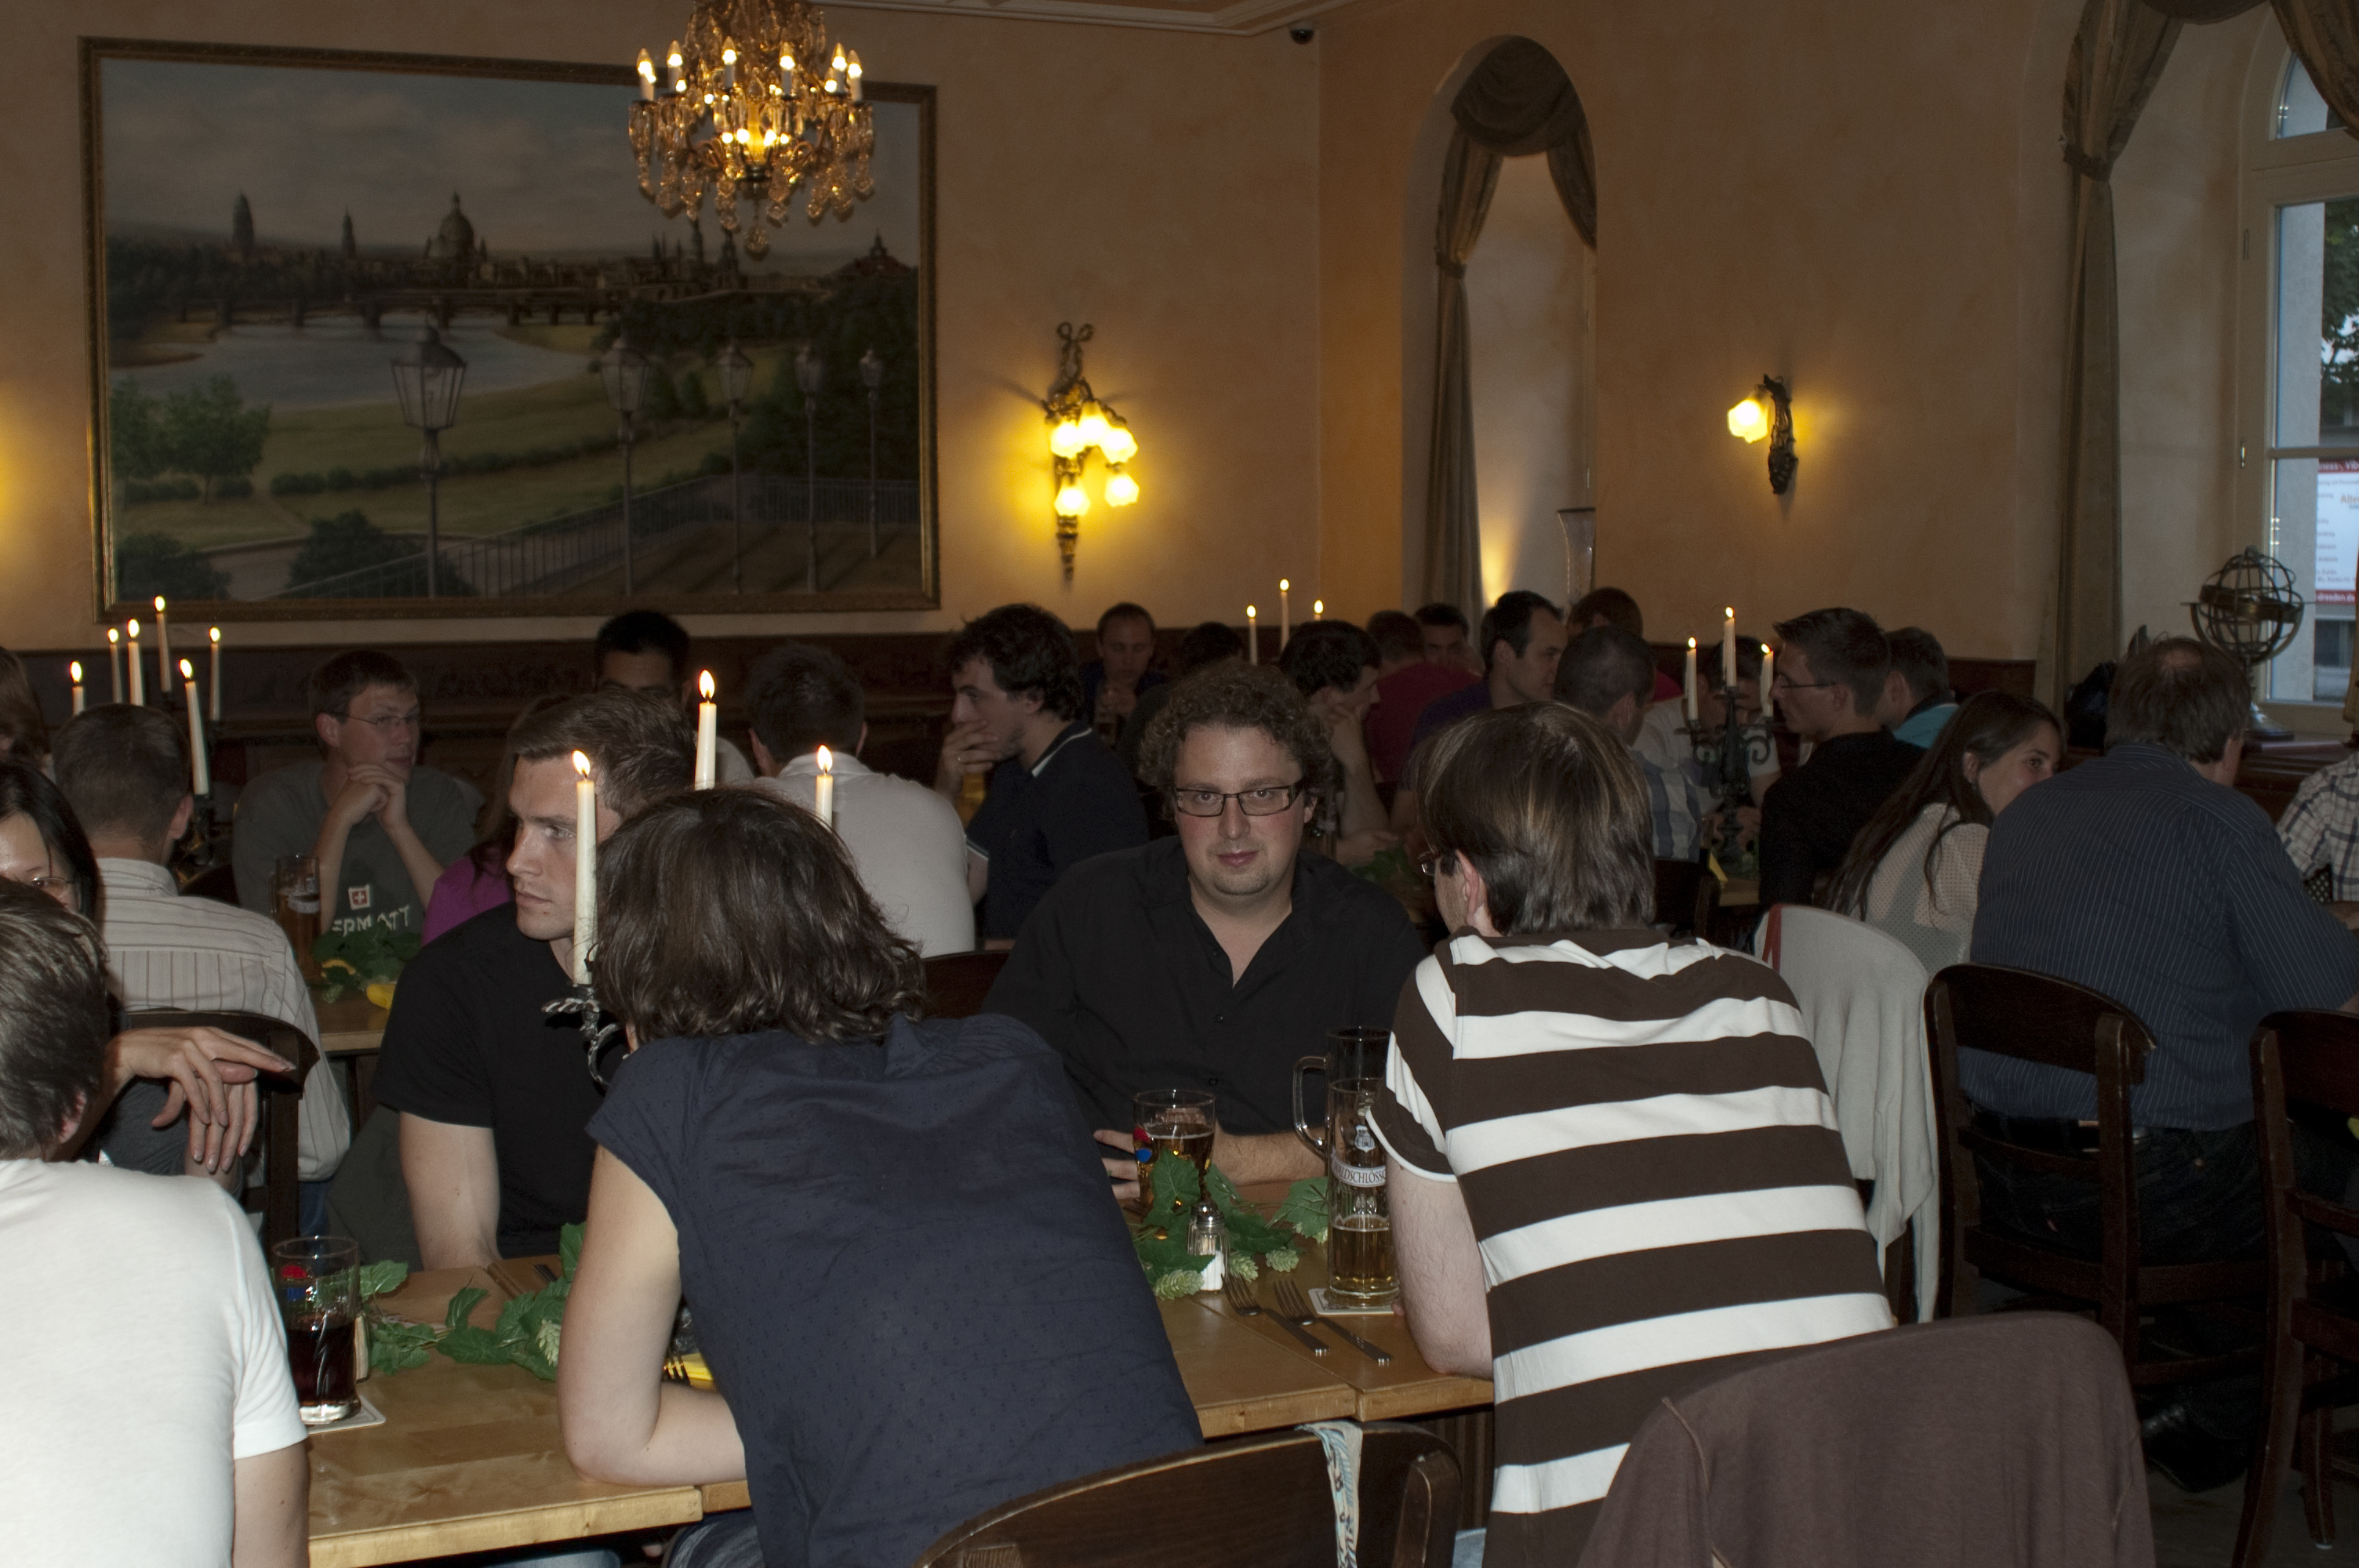 Evening event „Get together“ at Brauhaus Waldschlösschen